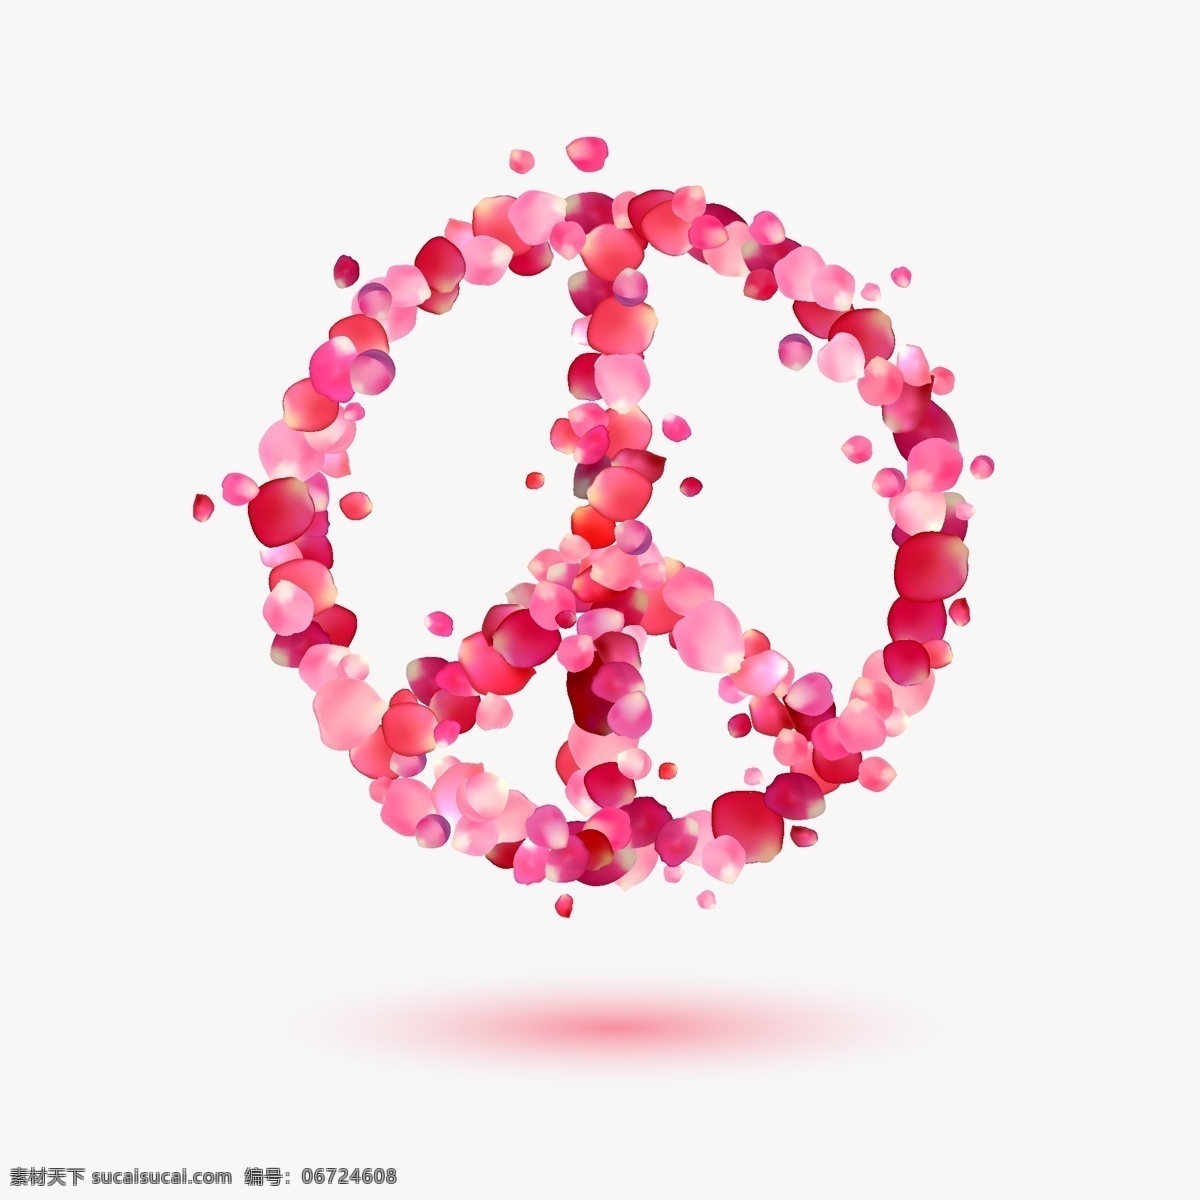 玫瑰 花瓣 组合 圆形 标识 海报 唯美 设计素材 图标 粉色 创意 合成 装饰 矢量 源文件